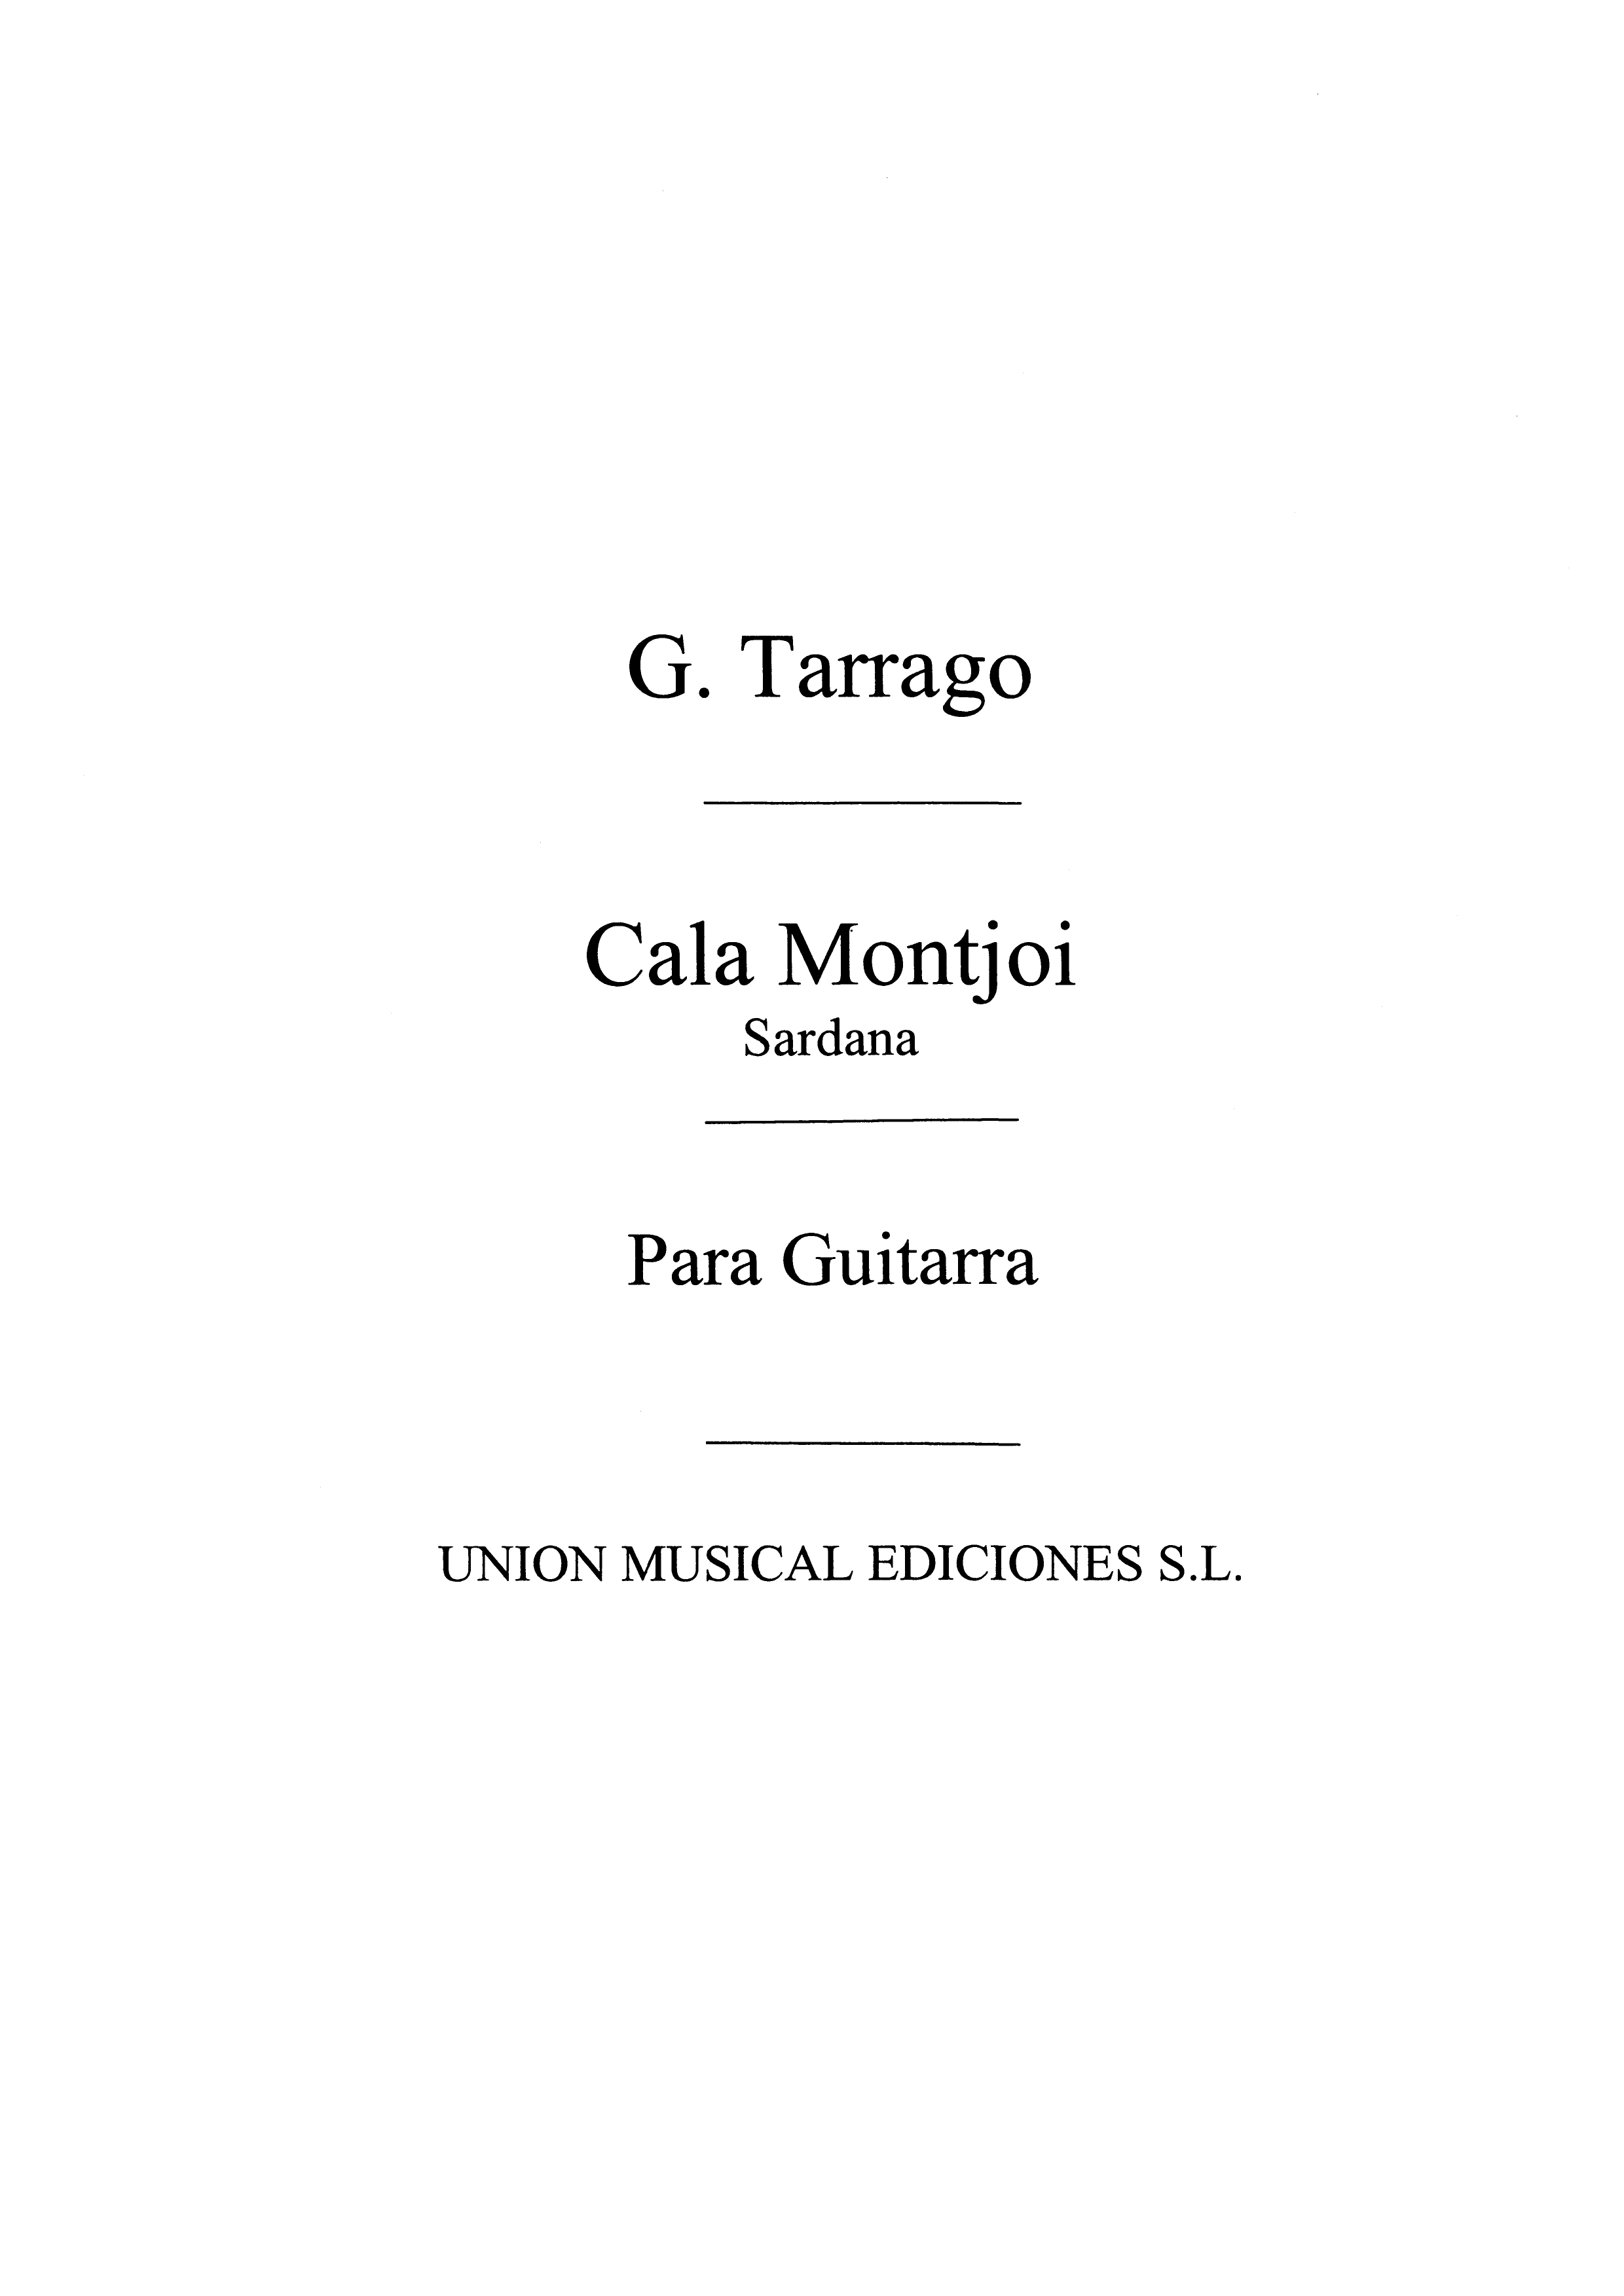 Graciano Tarrag: Cala Montjoi Sardana: Guitar: Instrumental Work